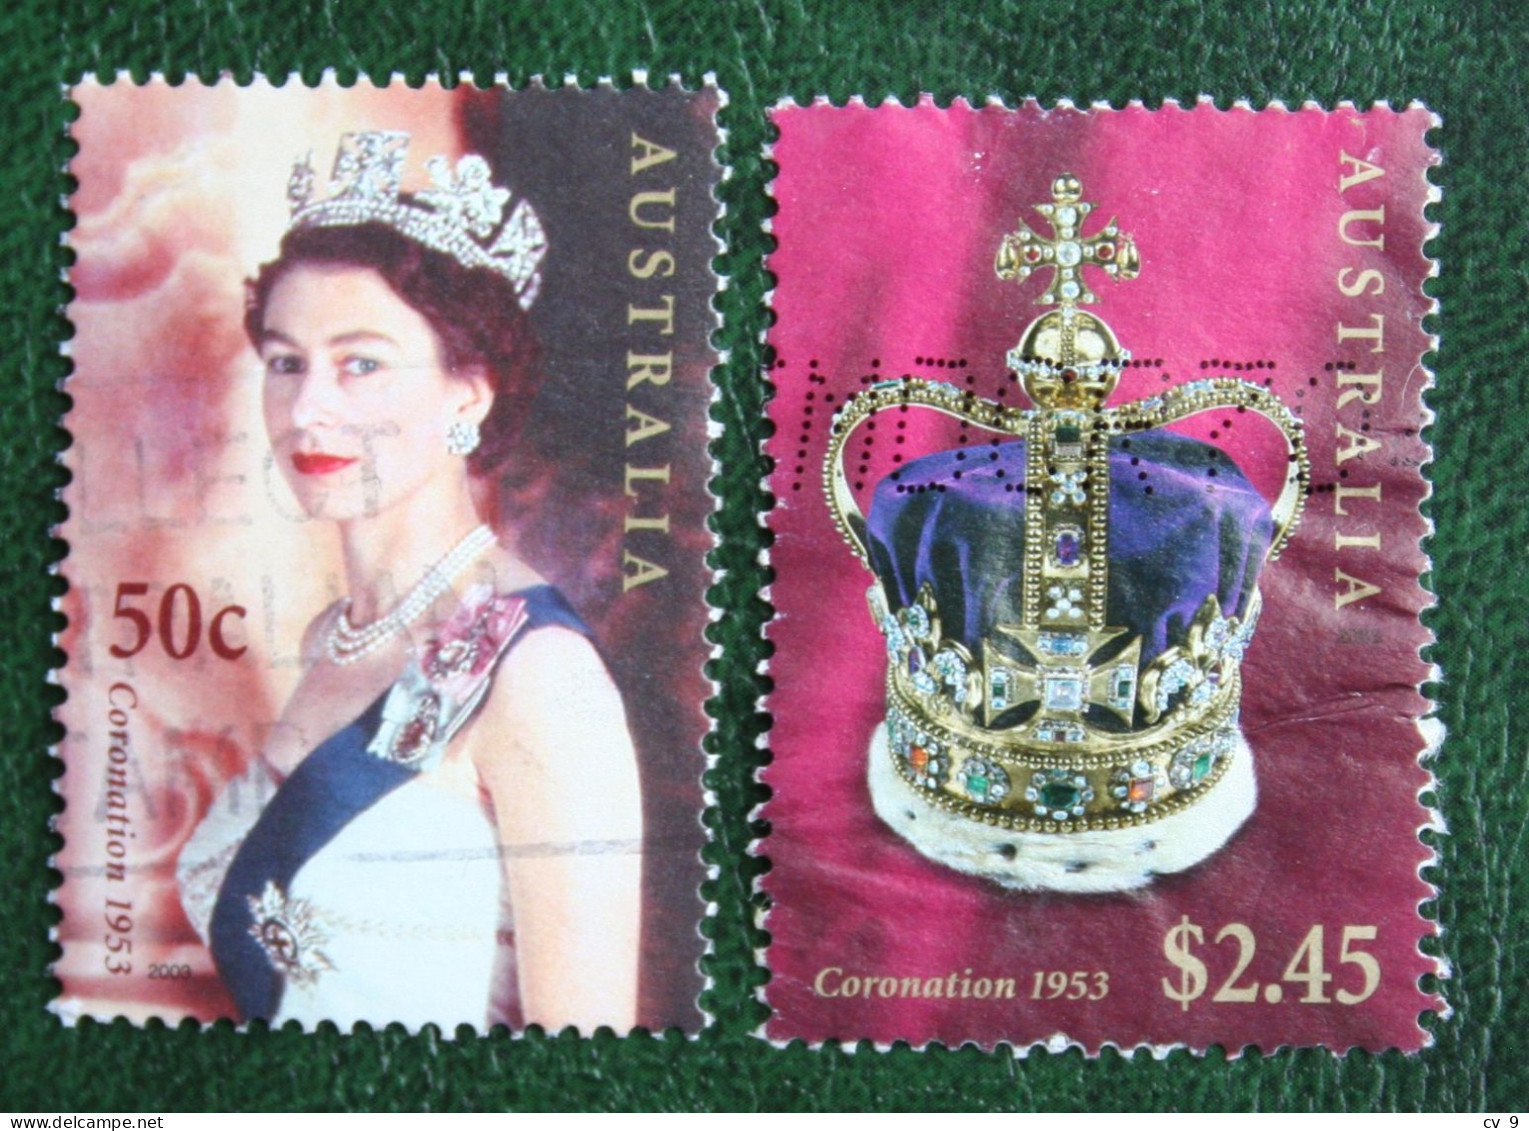 Queen Elizabeth II 2003 Mi 2228-2229 Used Gebruikt Oblitere Australia Australien Australie - Used Stamps